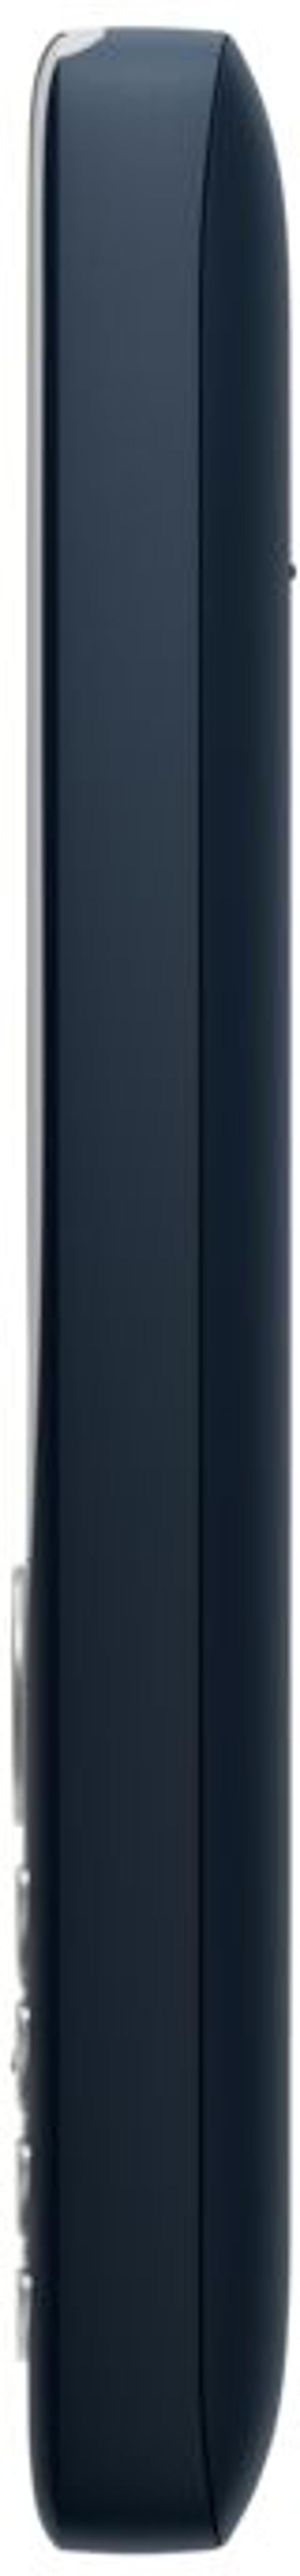 Nokia 8210 4G Kaksois-SIM Tummansininen